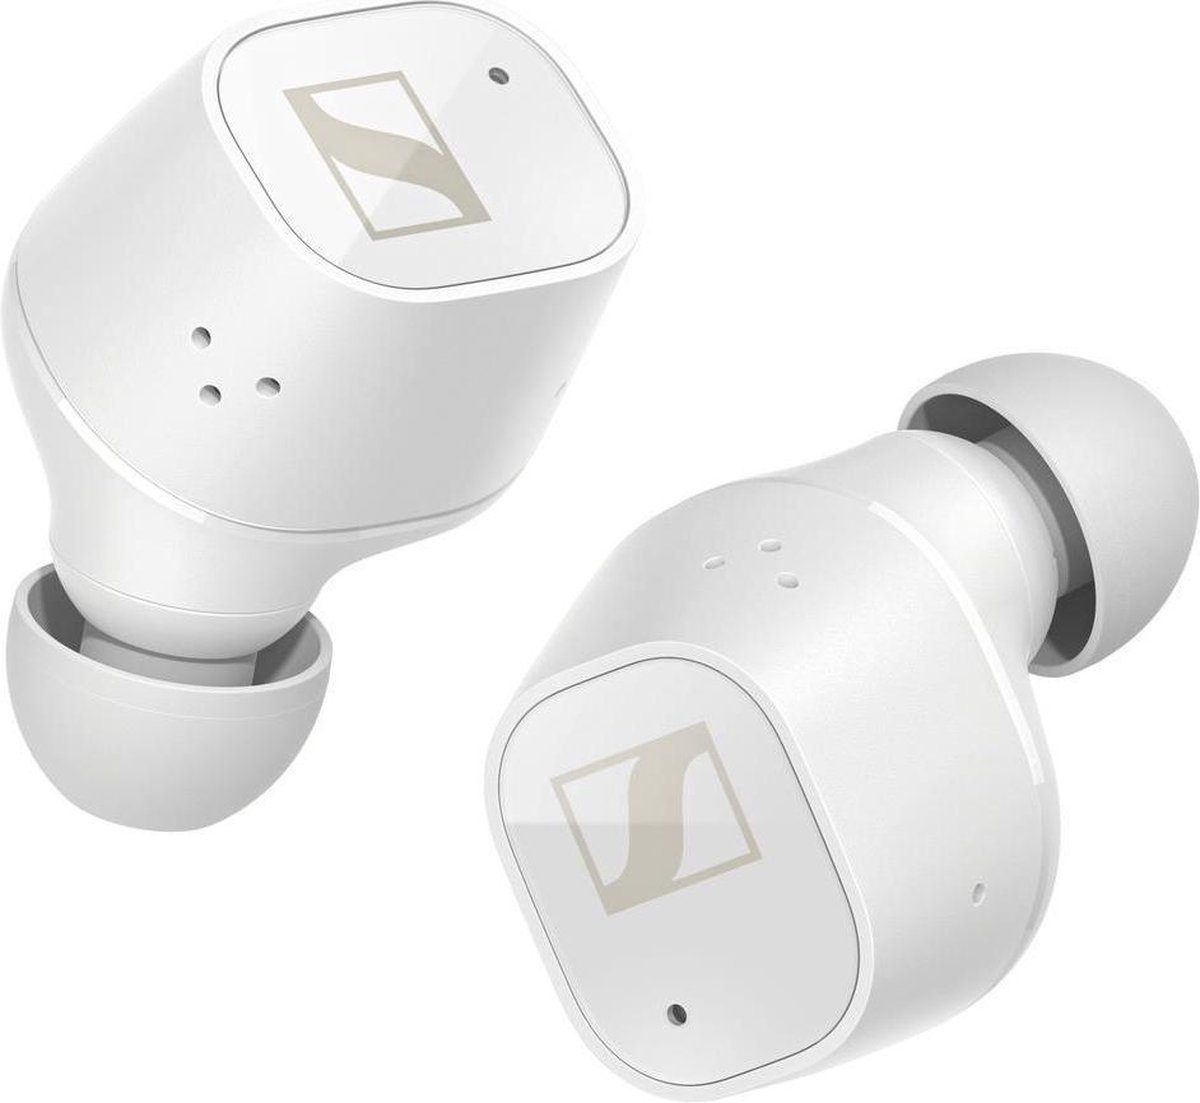 Sennheiser CX Plus True Wireless wit - In ear oordopjes